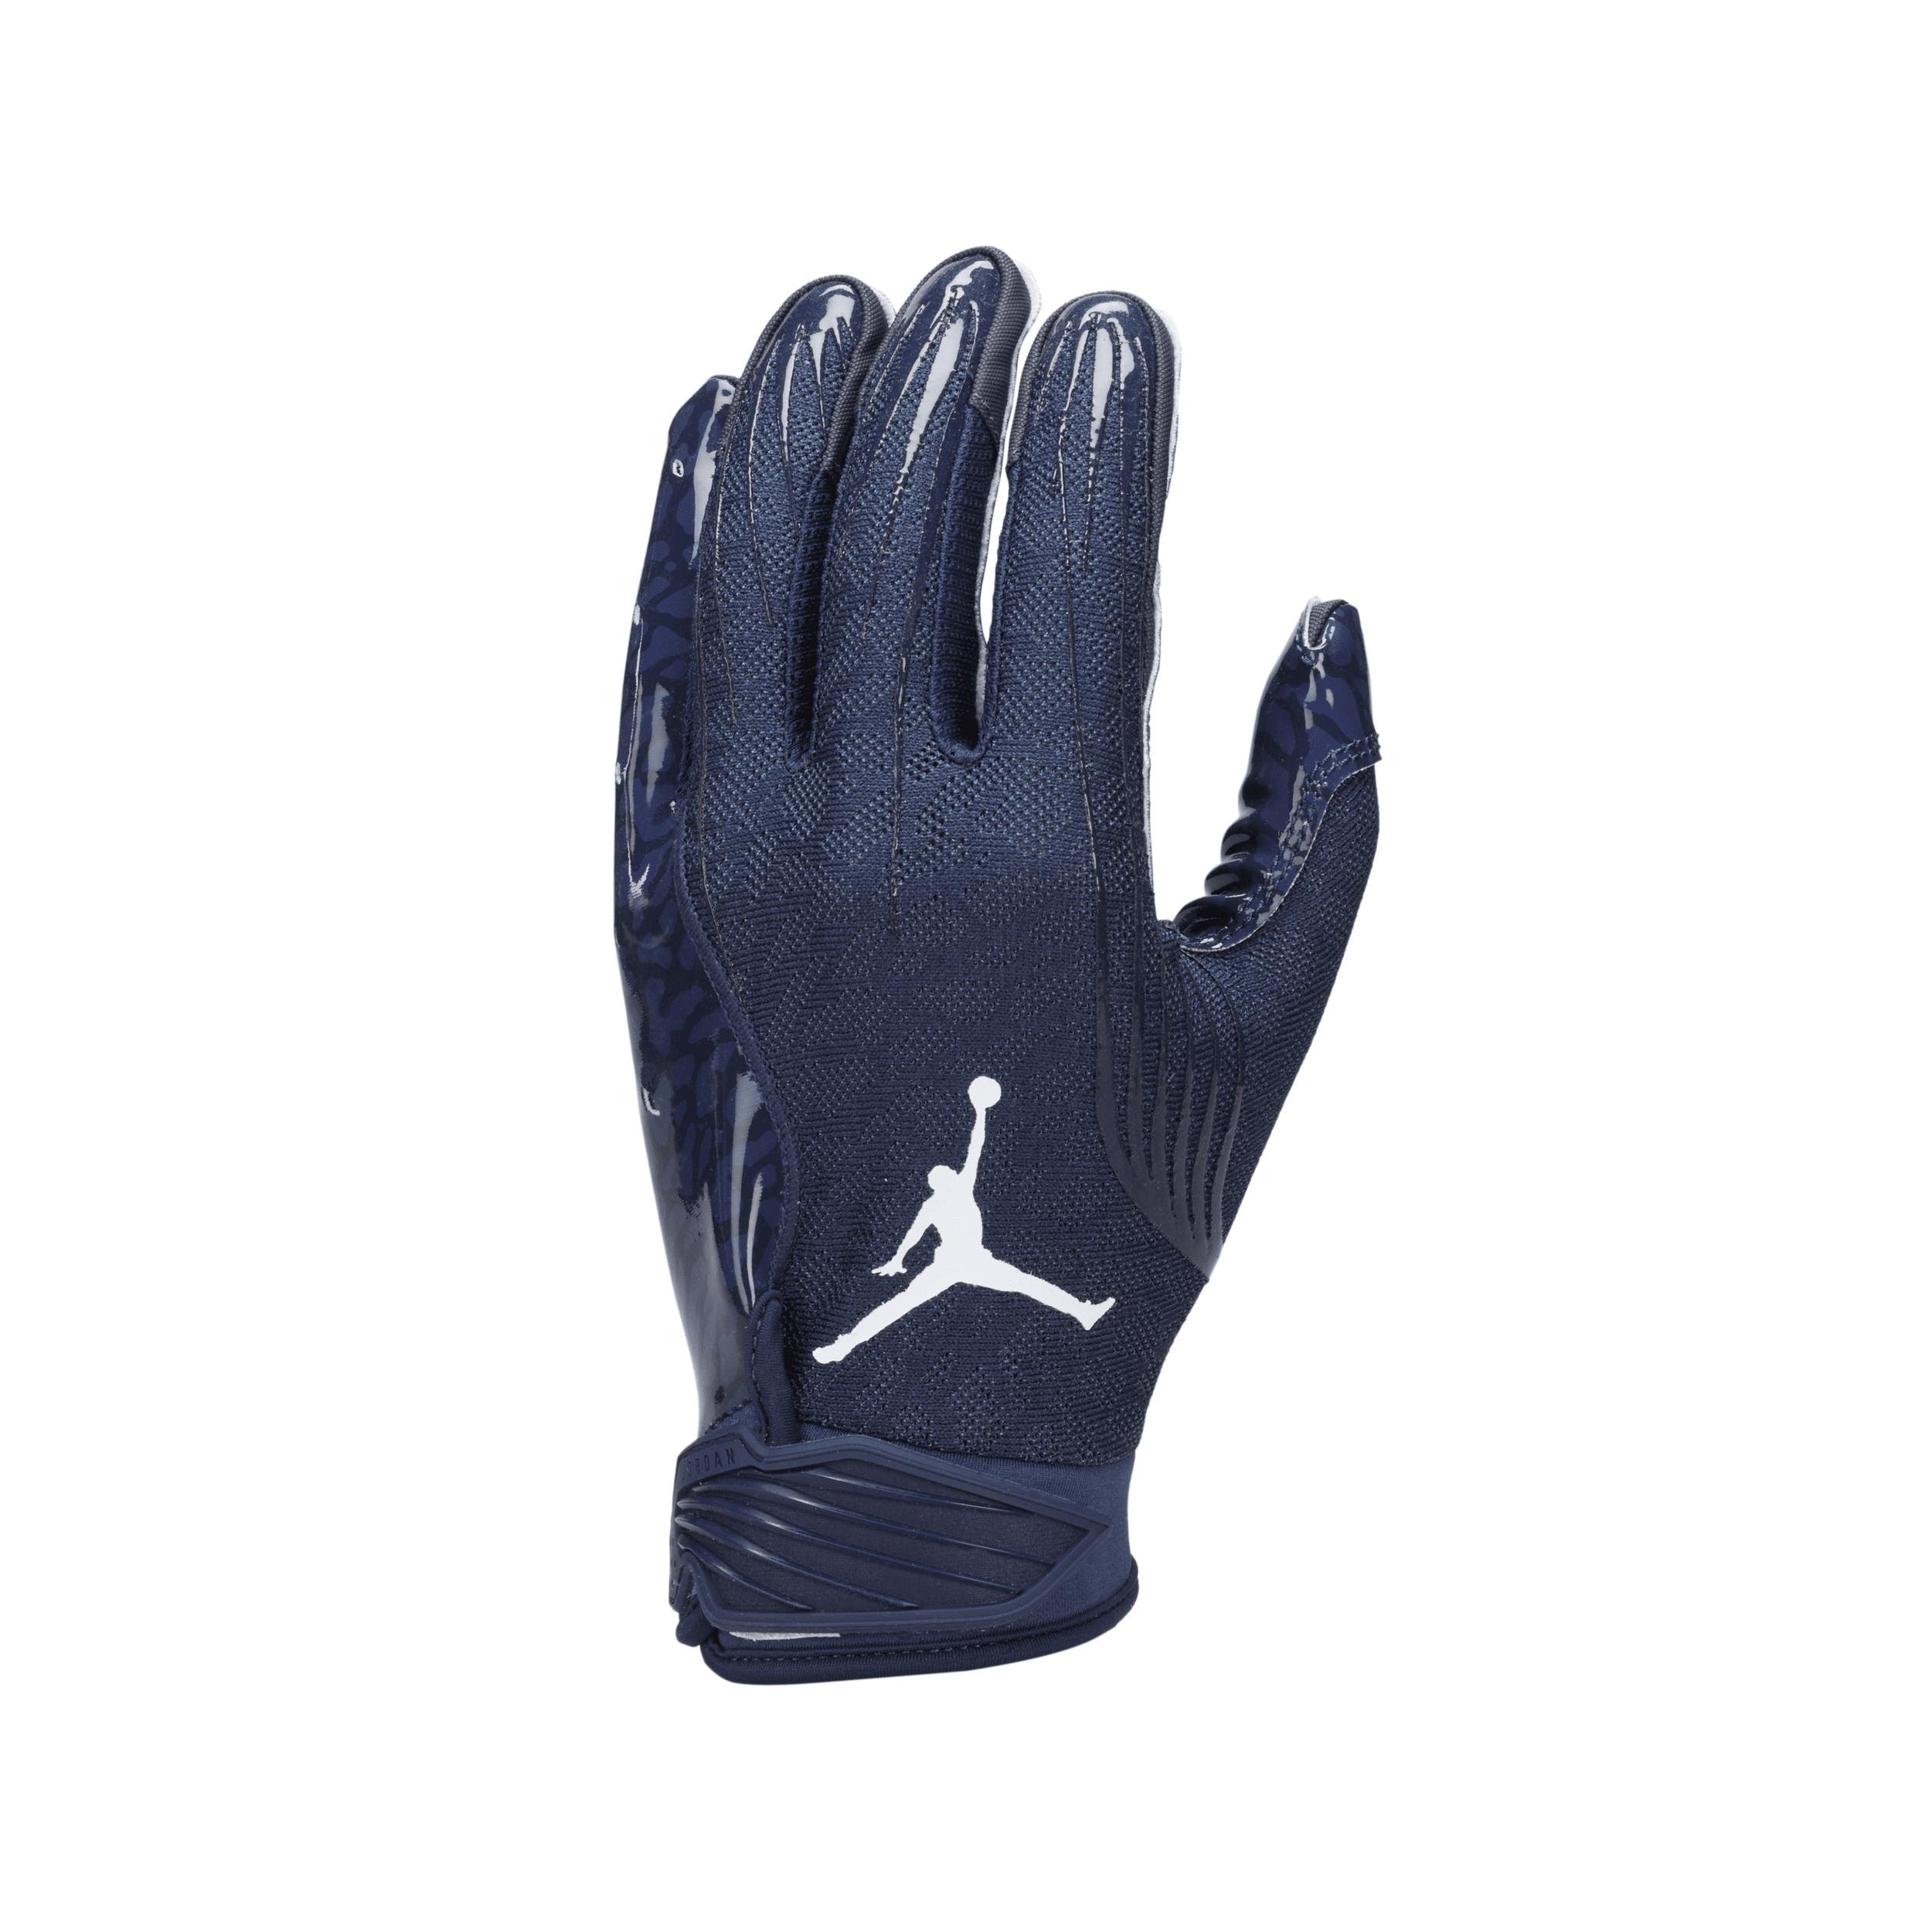 Jordan Fly Lock Football Gloves by JORDAN